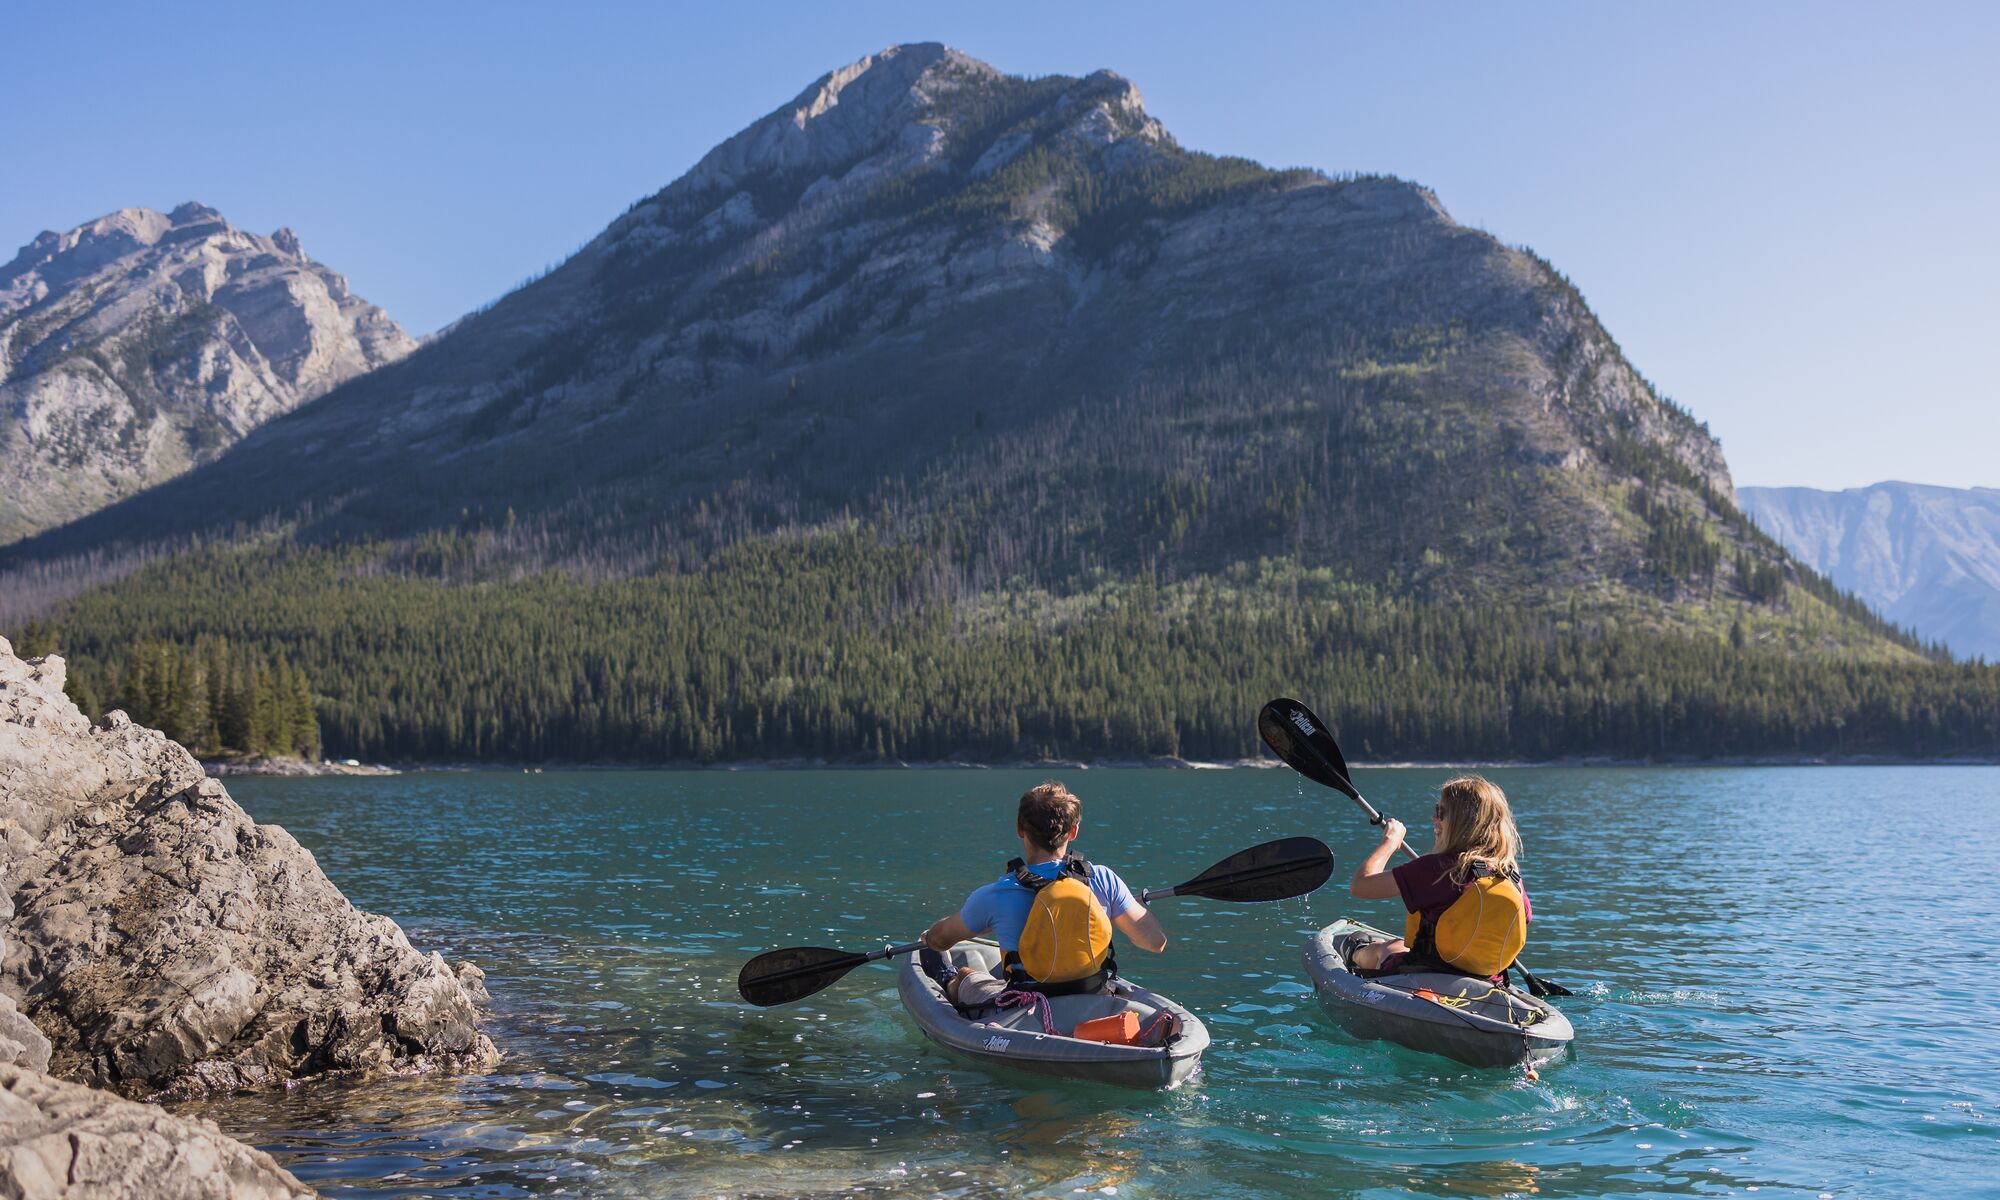 Two people kayak on Lake Minnewanka in Banff National Park.